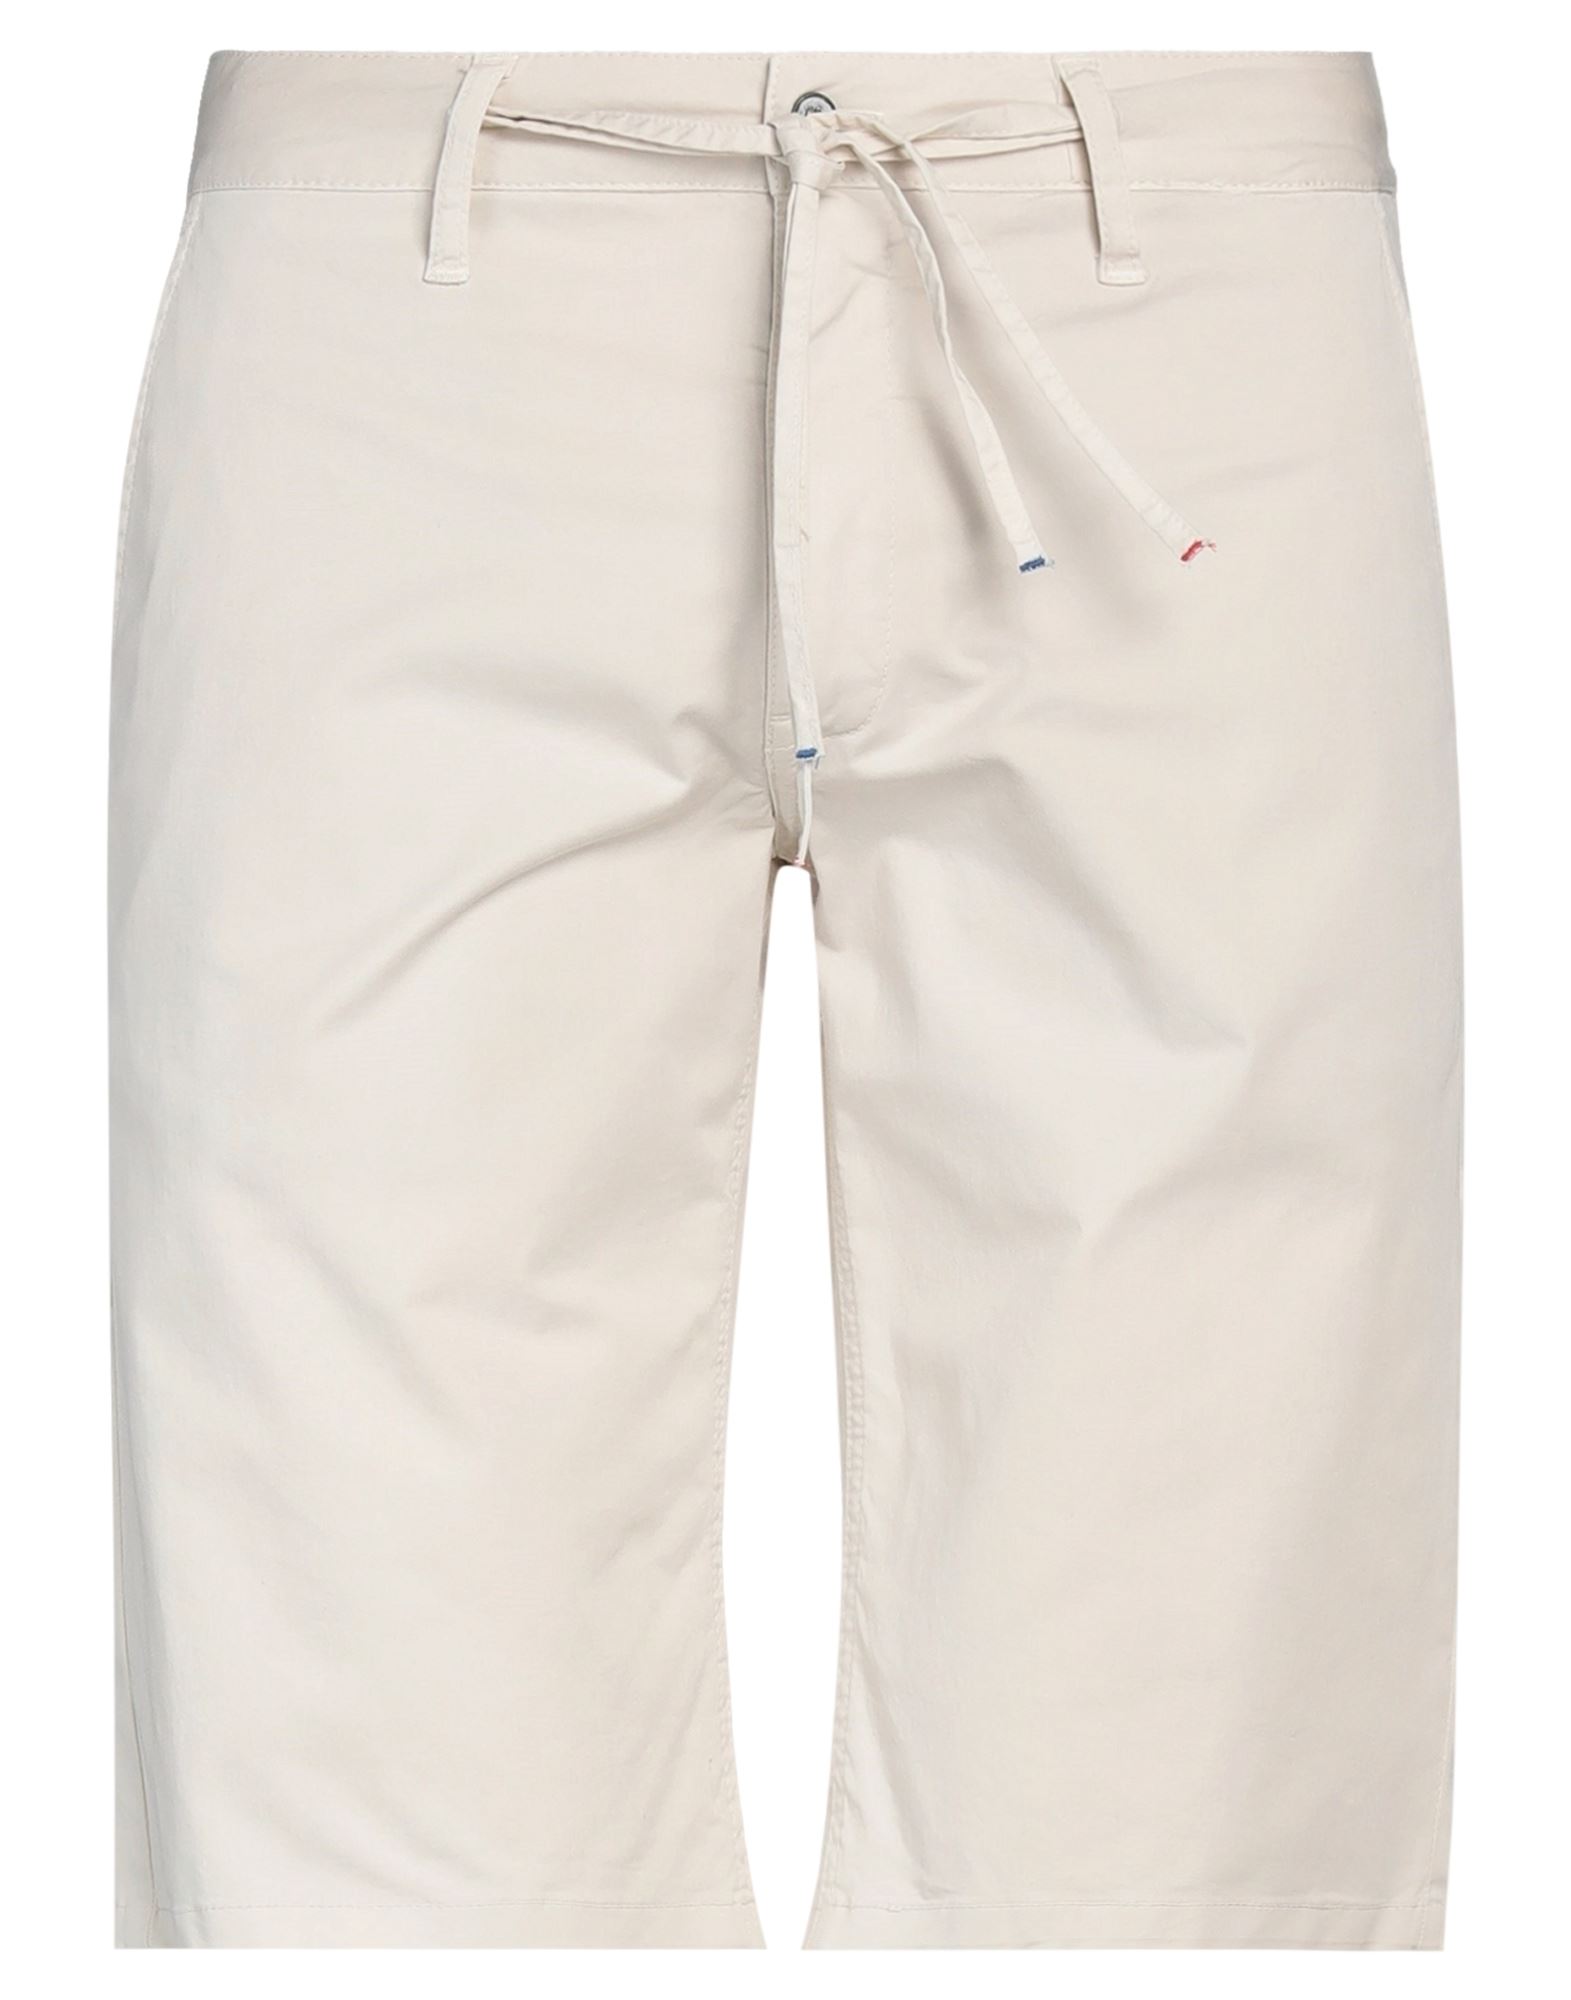 Grey Daniele Alessandrini Man Shorts & Bermuda Shorts Beige Size 26 Cotton, Elastane